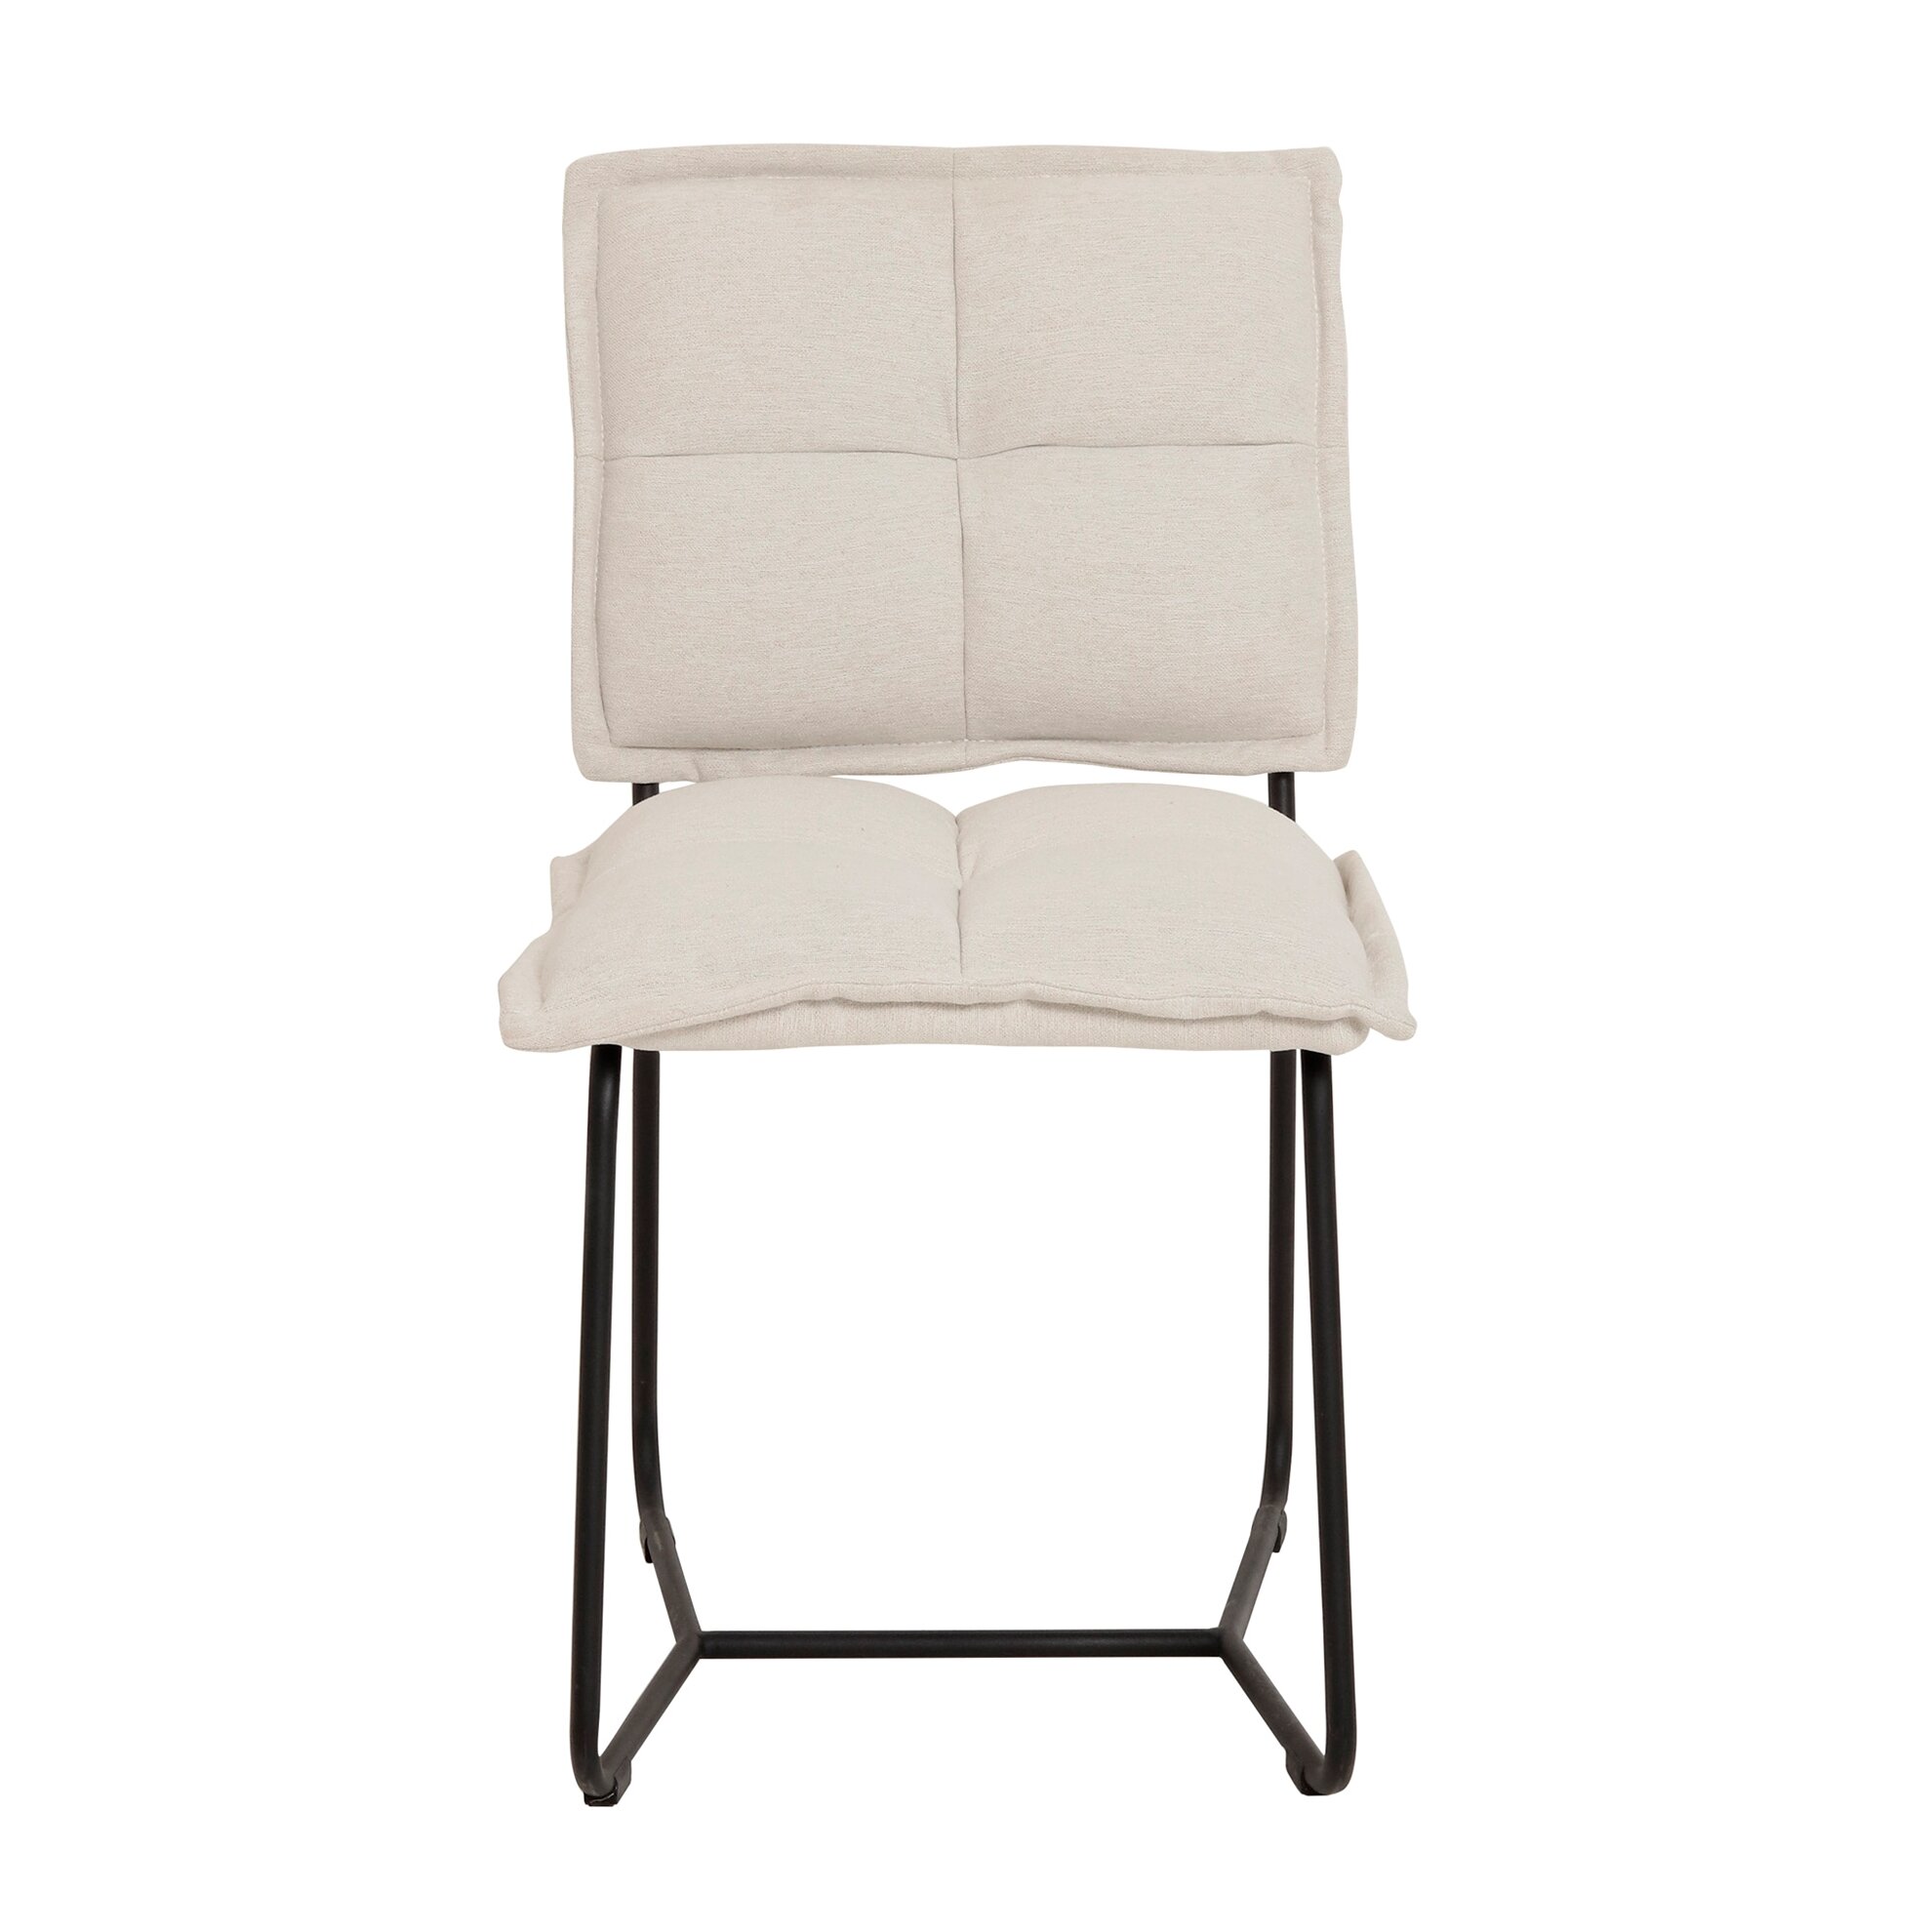 Kumaş Sandalye (66x52x87cm)